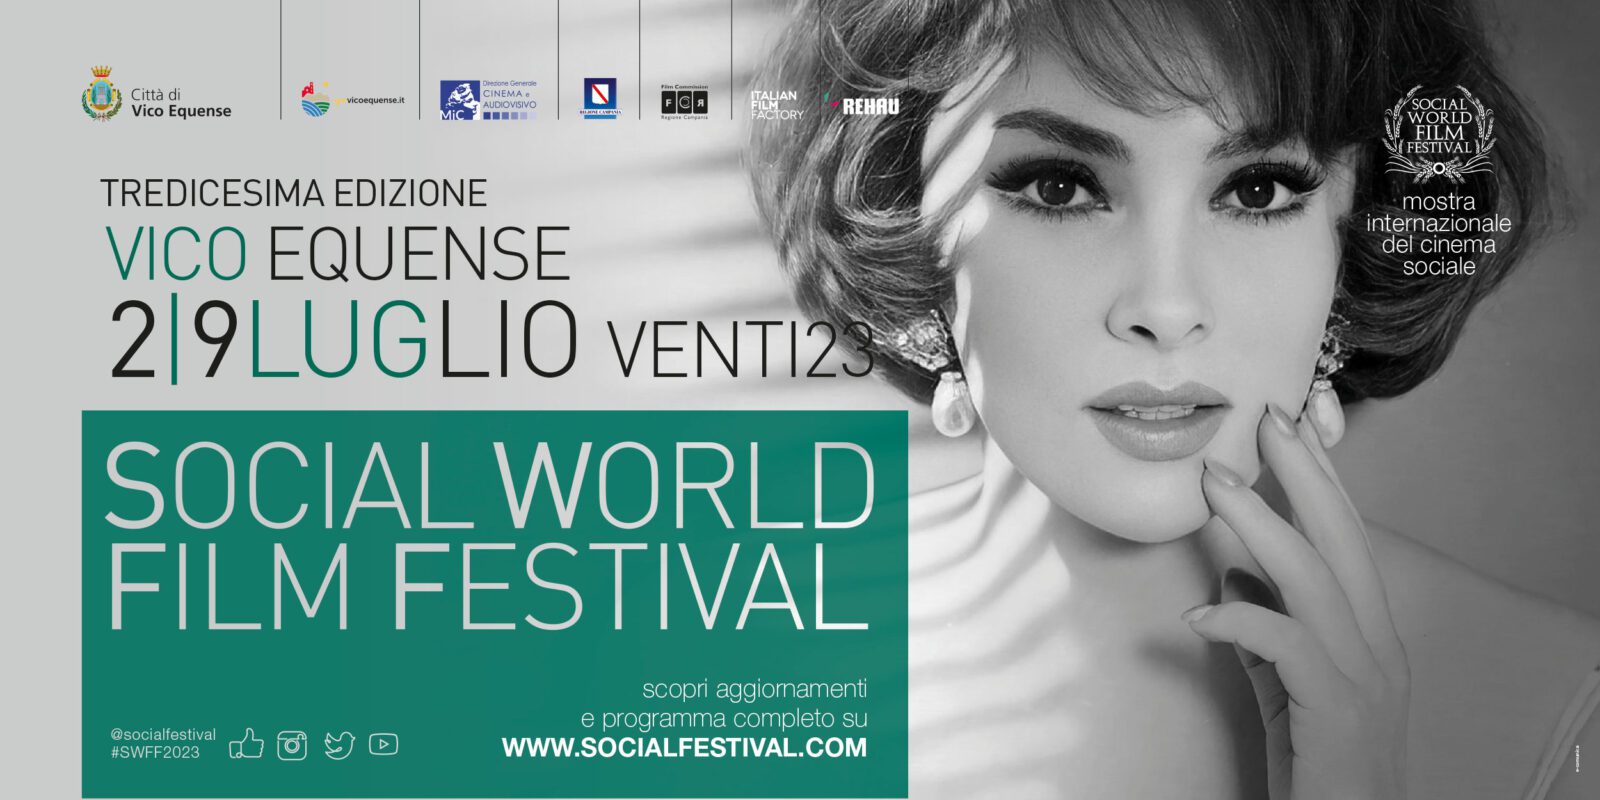 Social World Film Festival, ospite stasera Mira Sorvino